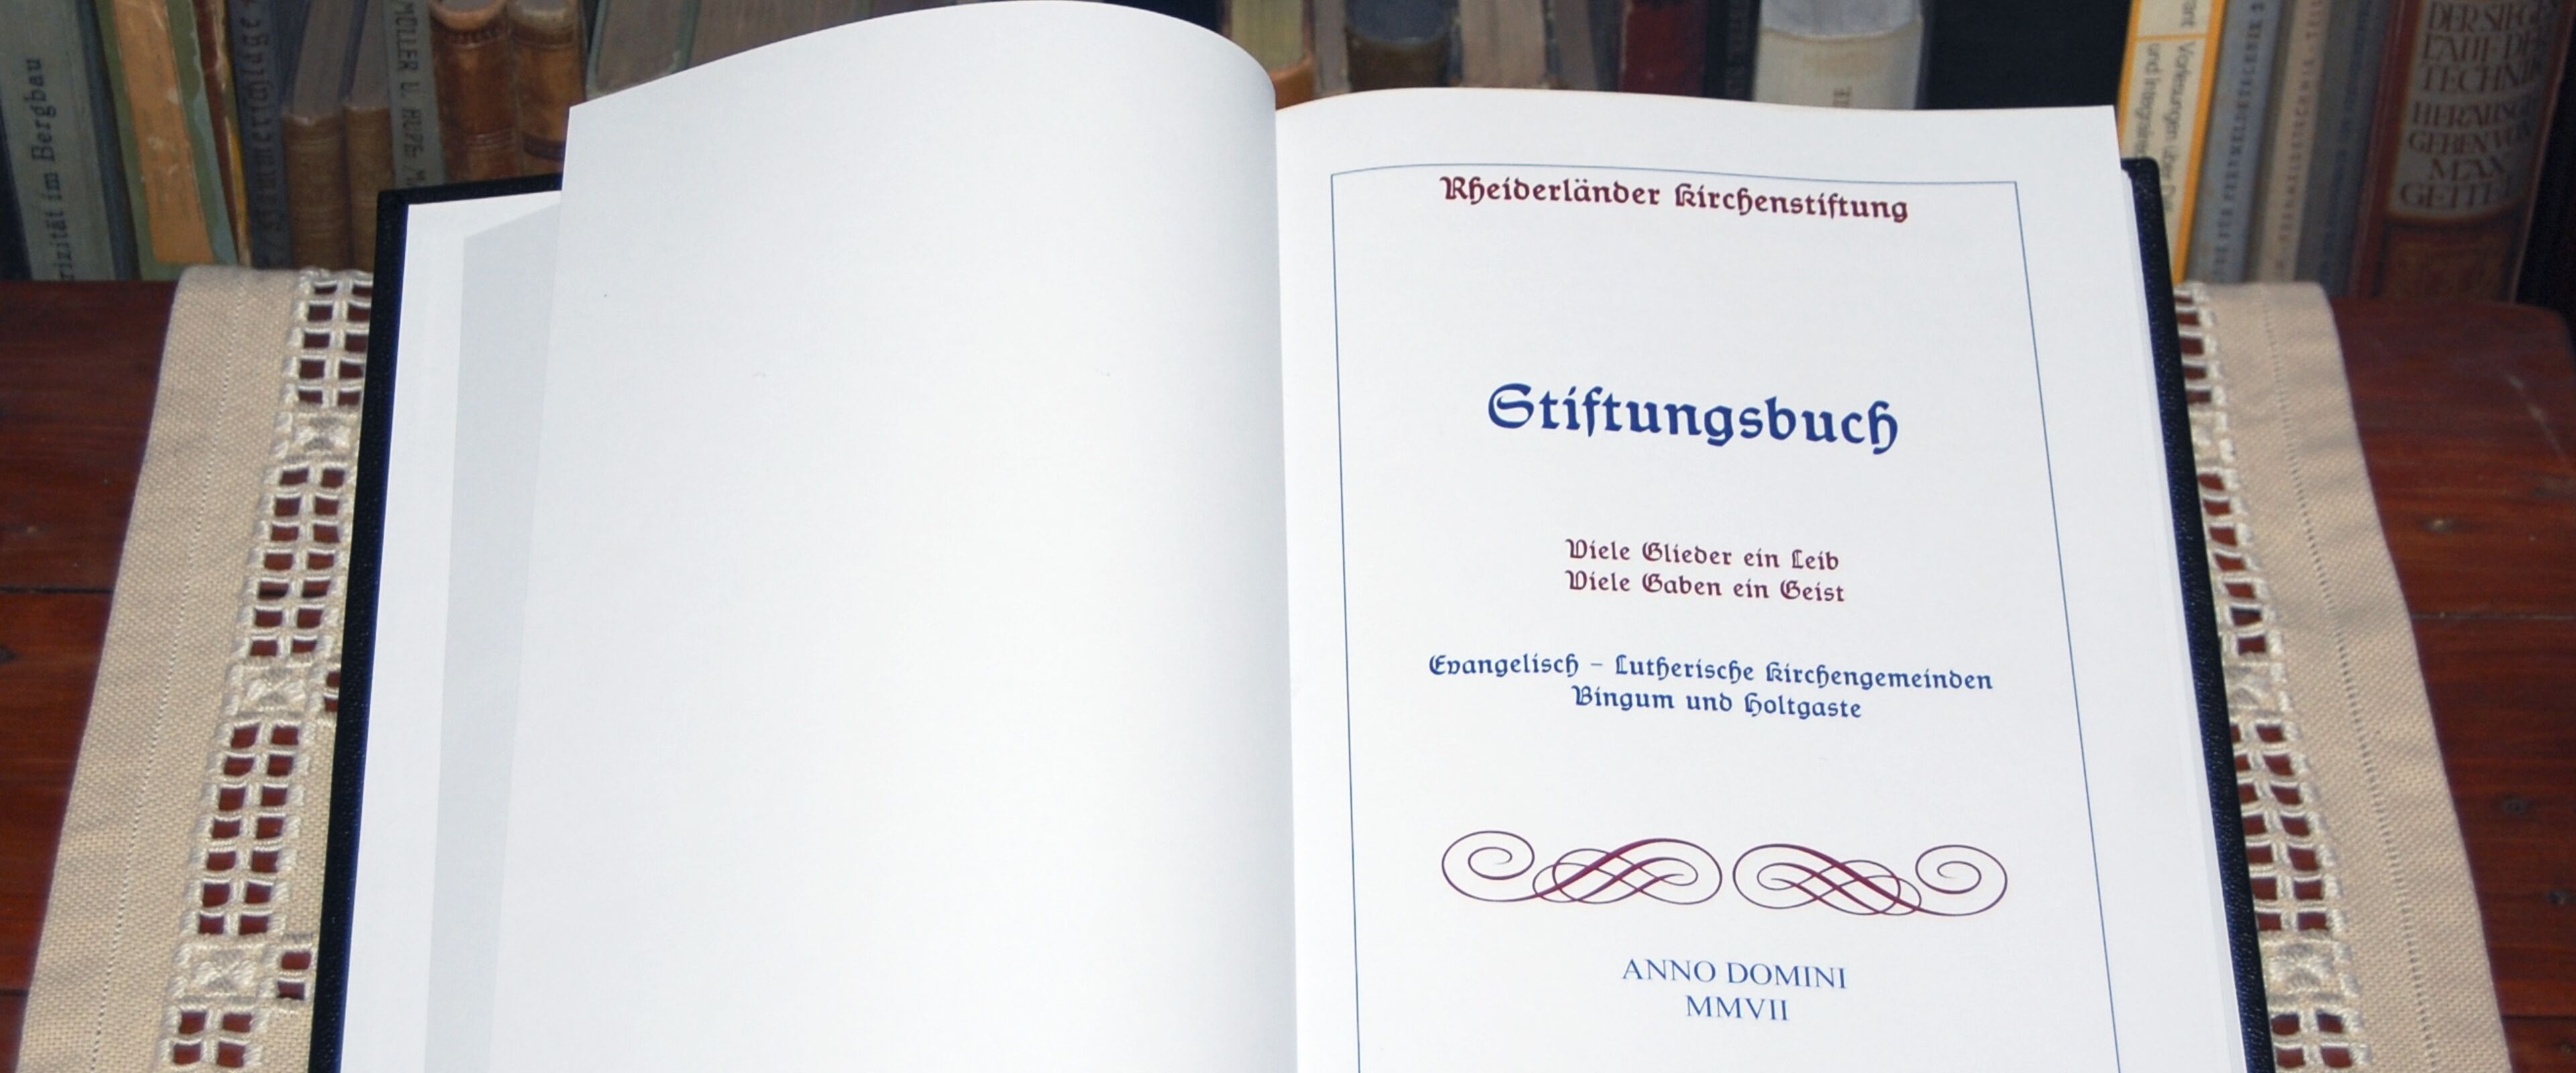 Stiftungsbuch der Rheiderländer Kirchenstiftung